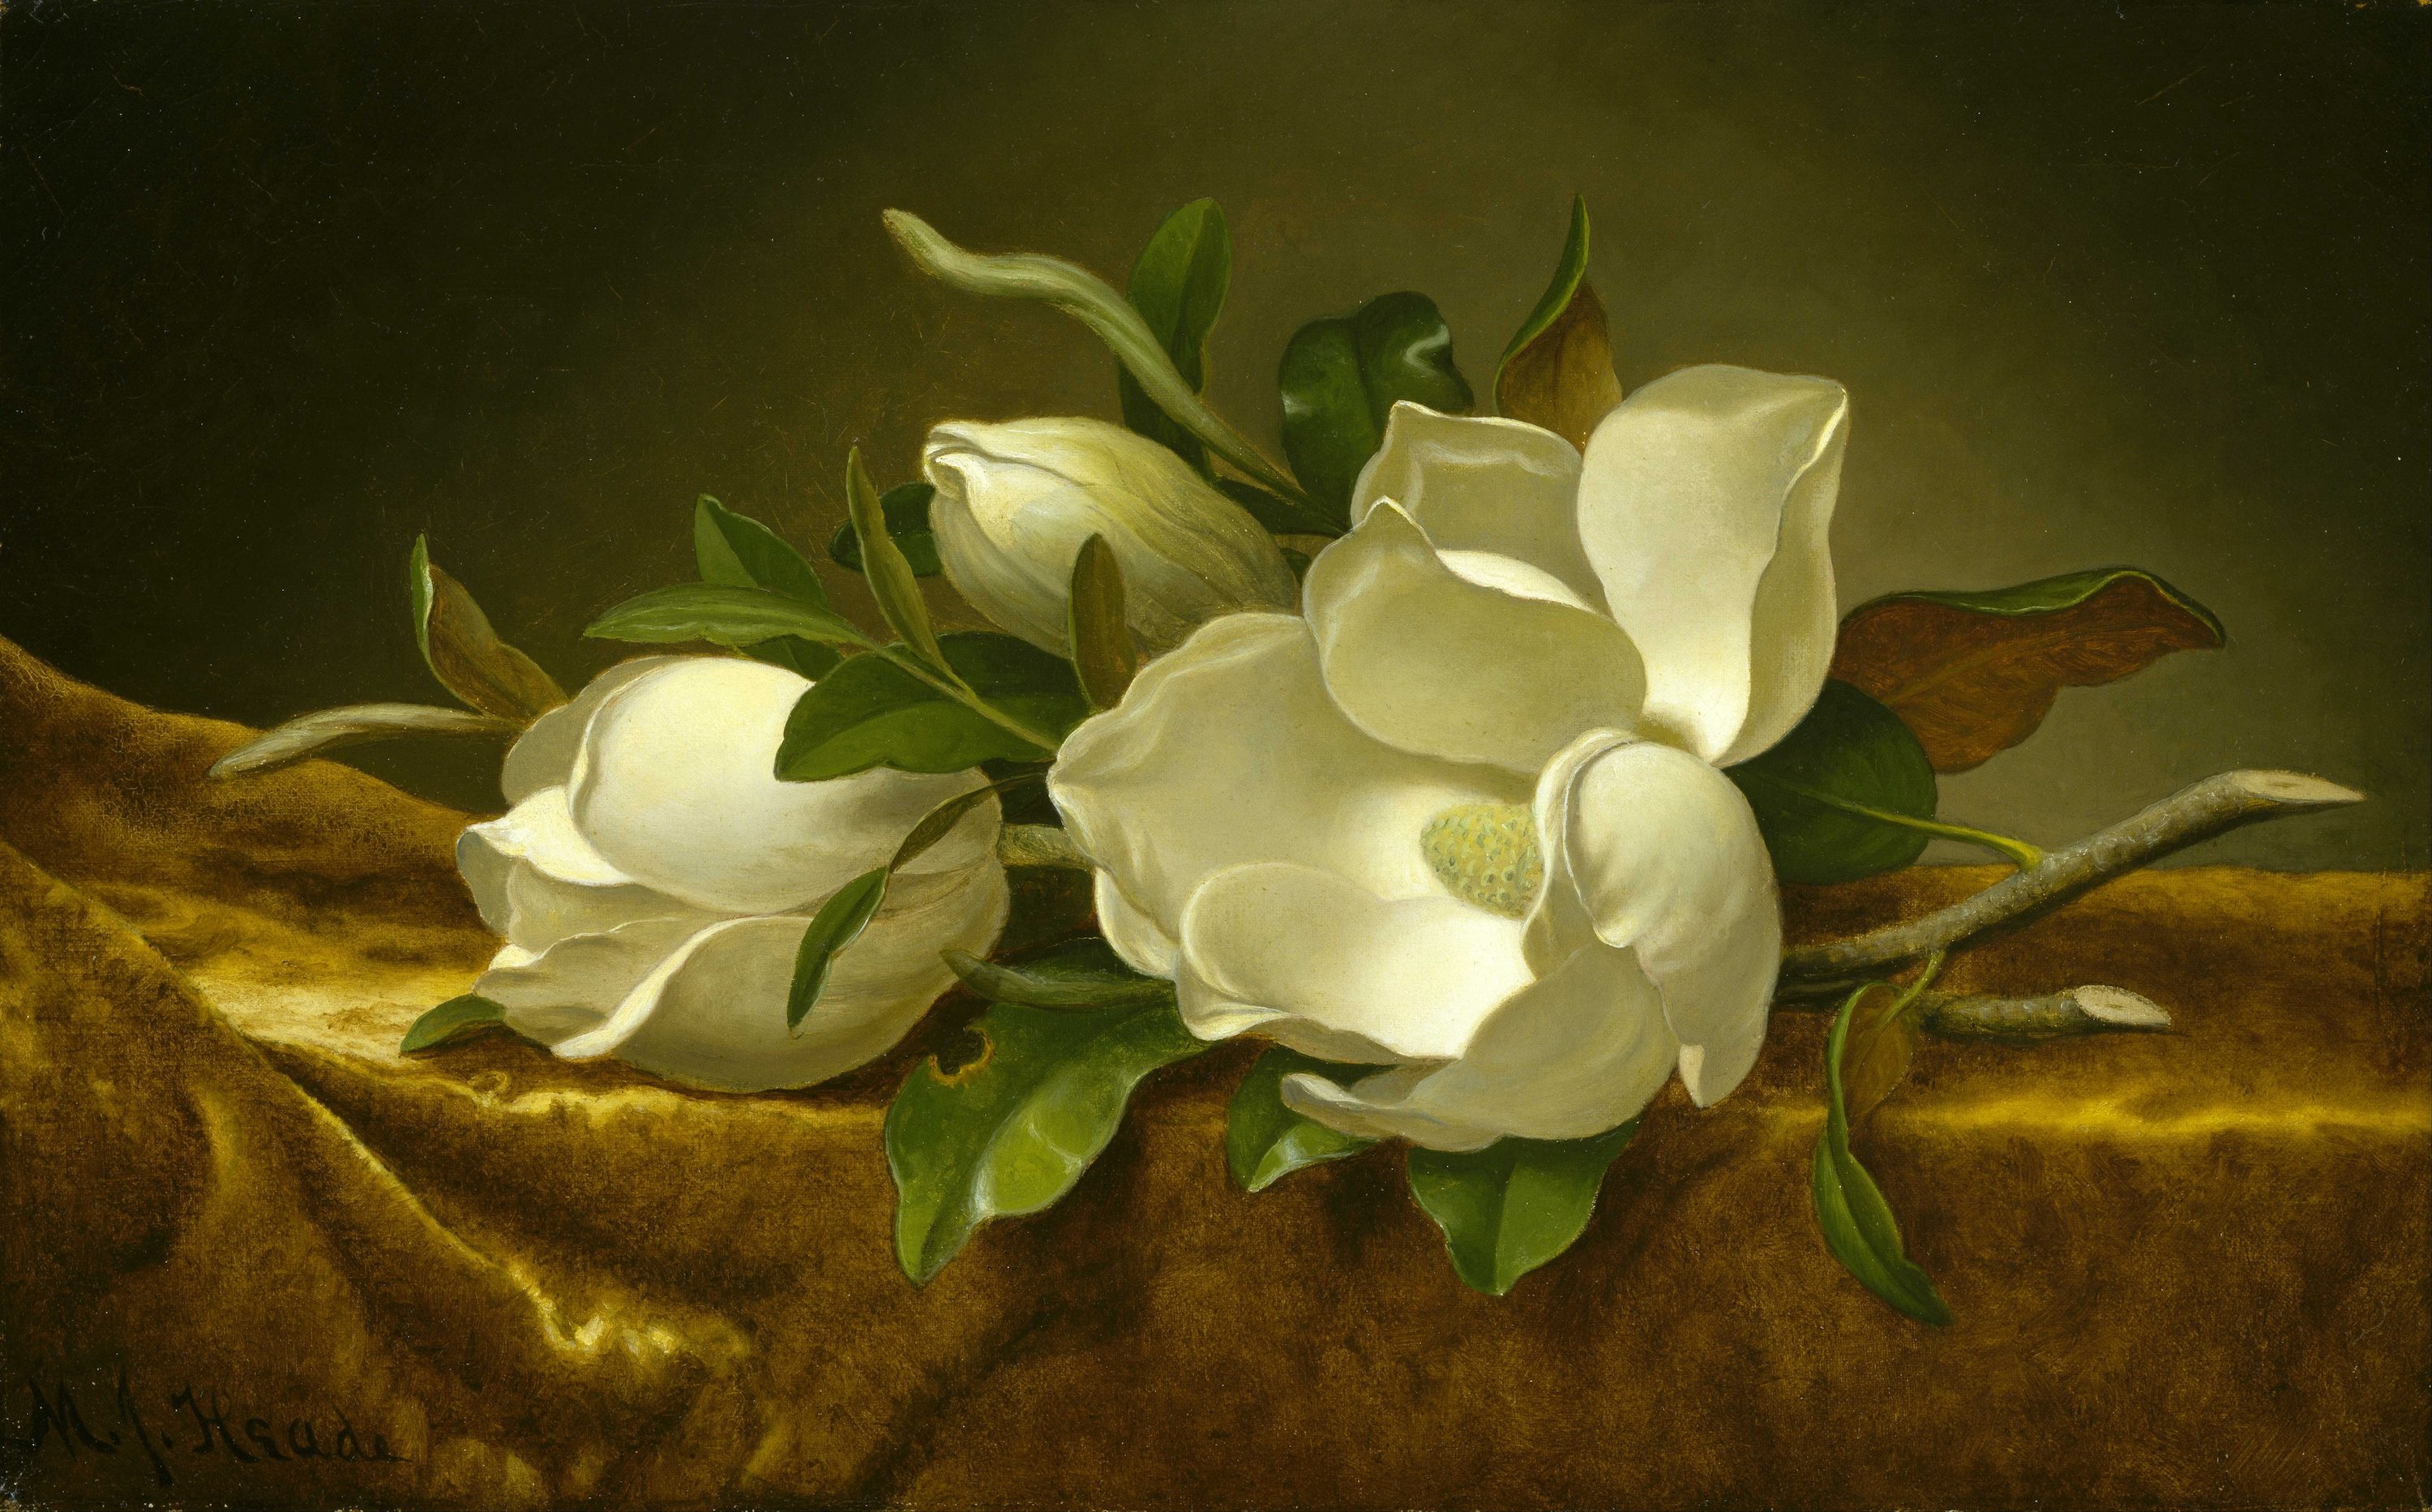 金絲絨布上的玉蘭花 by Martin Johnson Heade - c. 1888-1890 - 61 x 37.6cm 